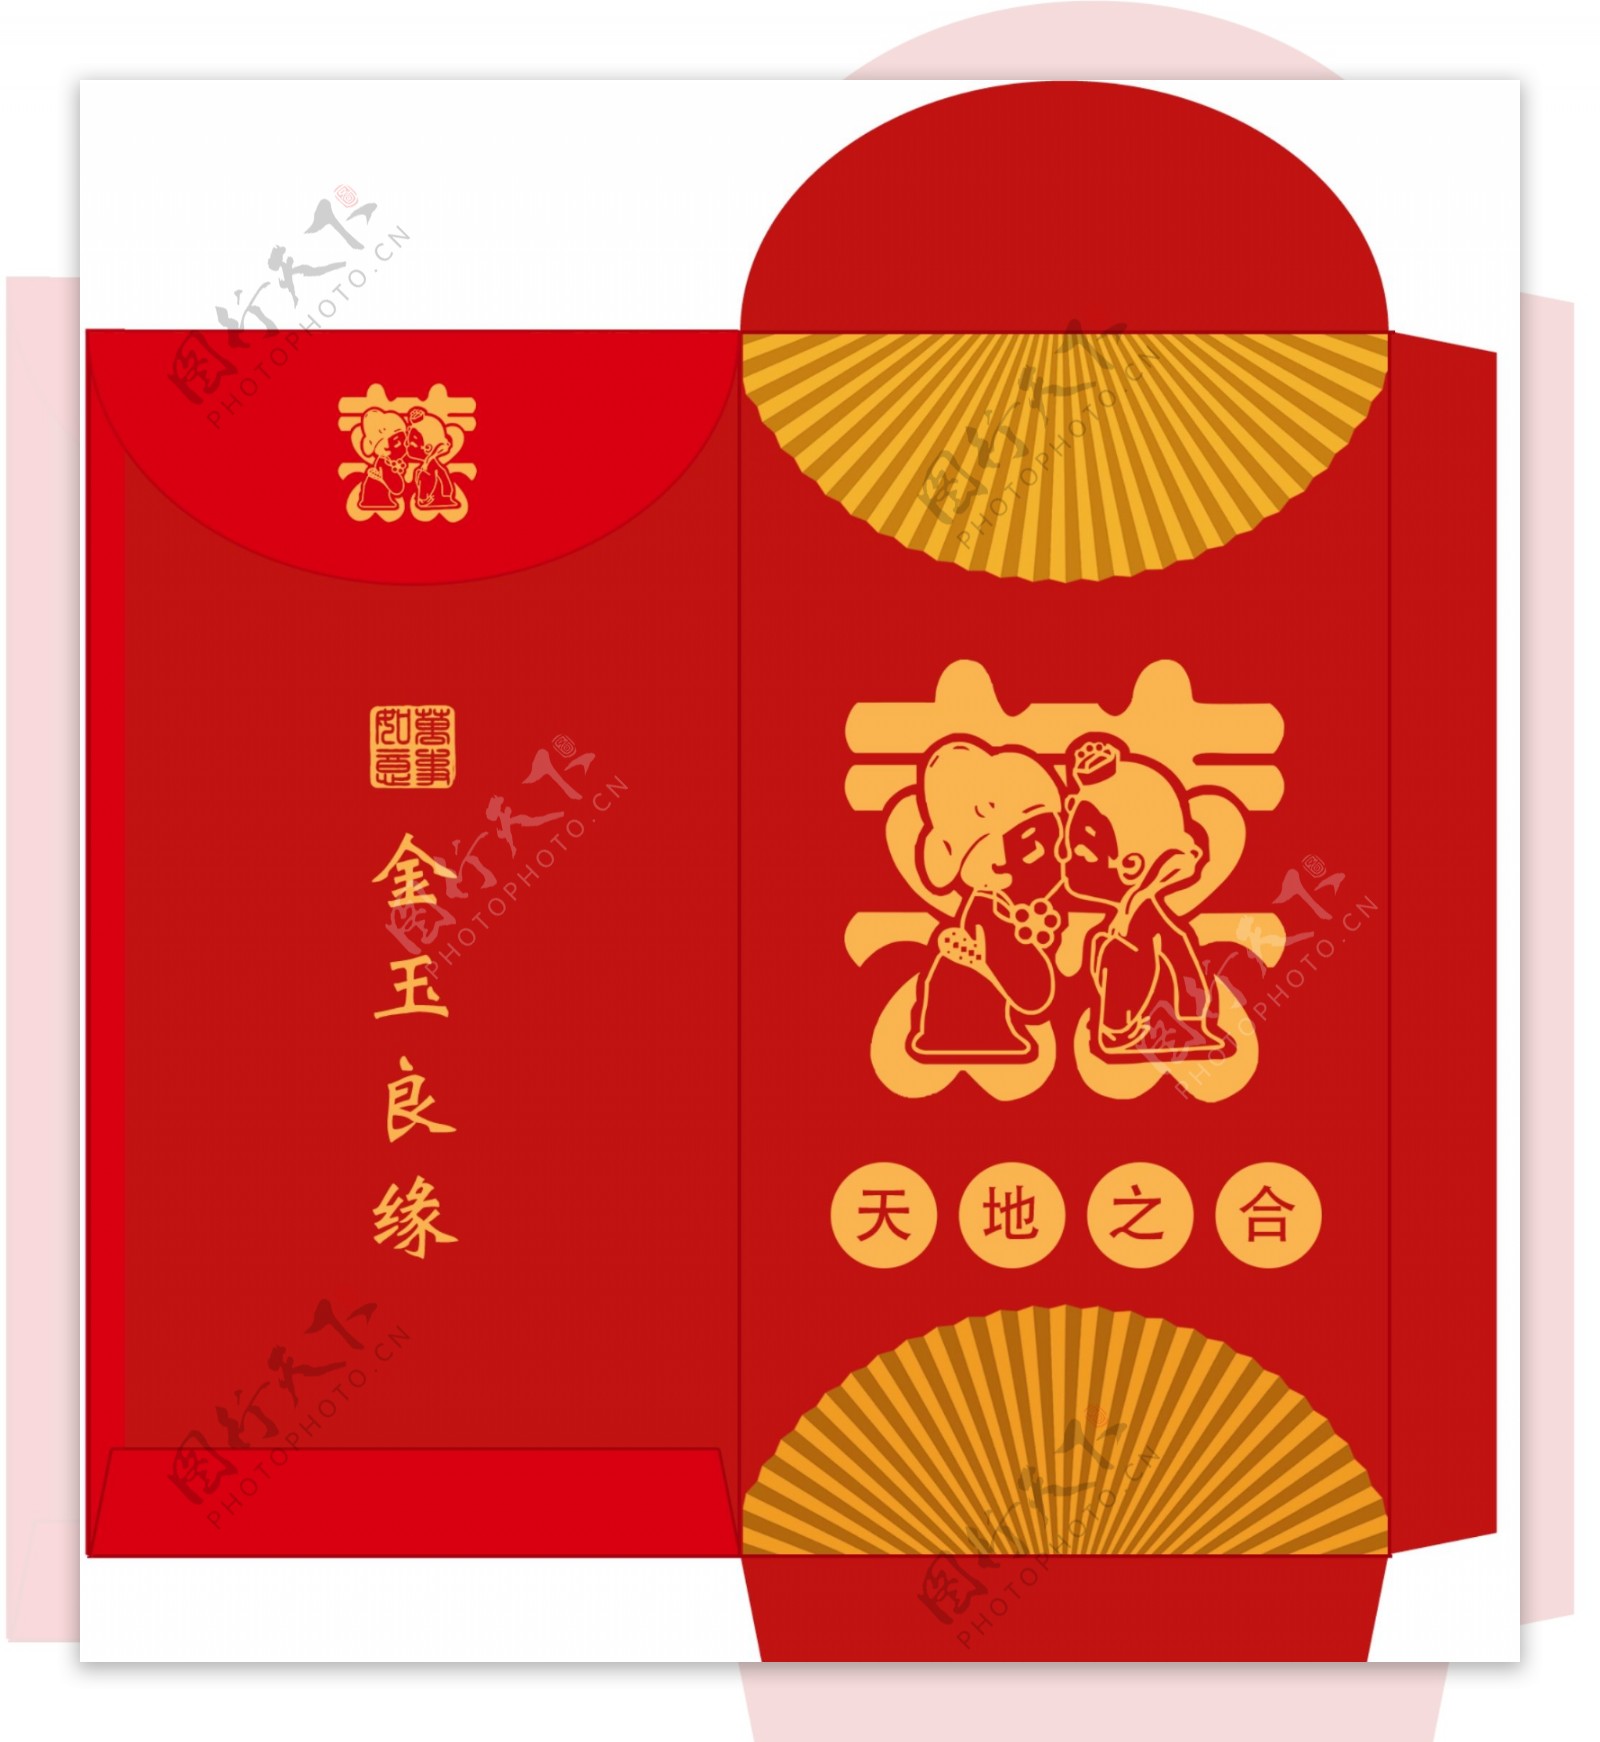 高档创意中国风婚礼红包设计模板